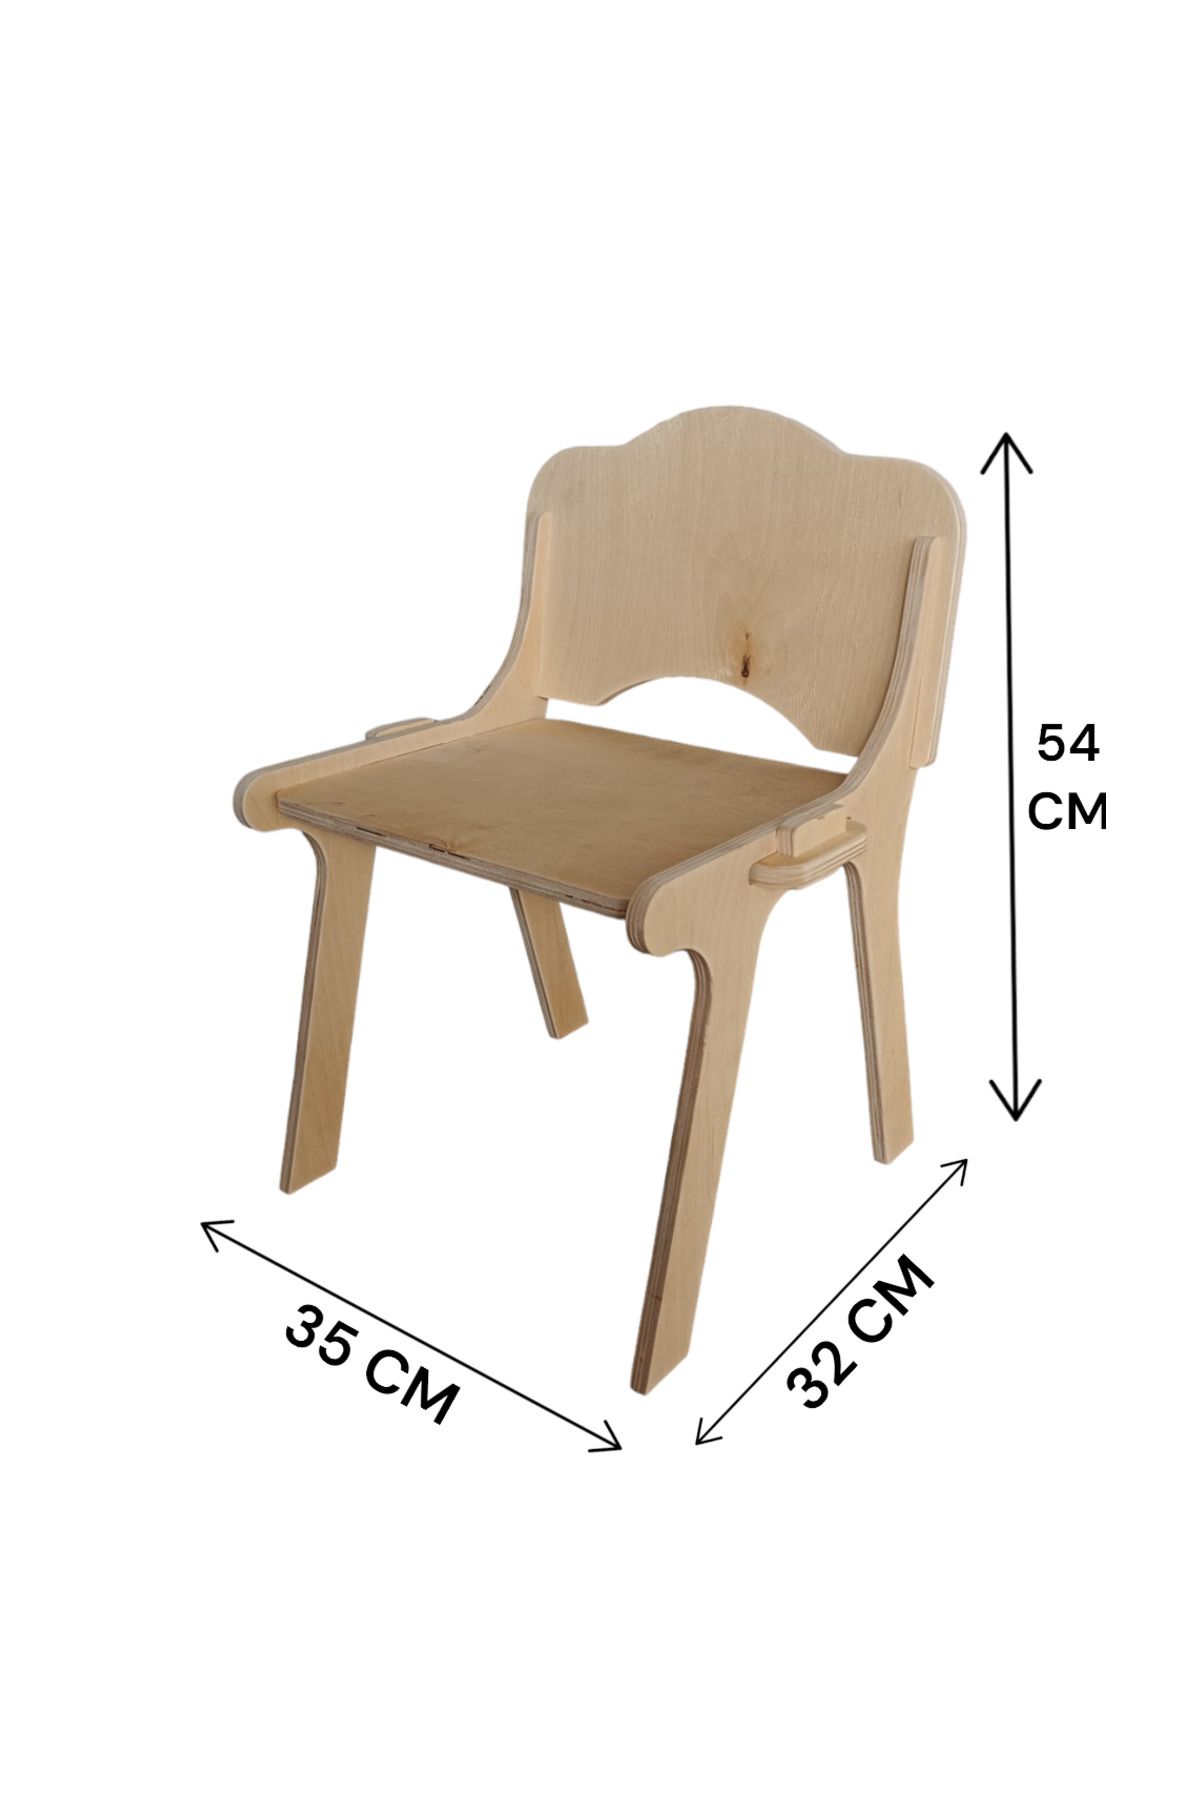 PreArt Çocuk Sandalyesi Uzun Ömürlü Ahşap portatif demonte sandalye piknin sandalyesi